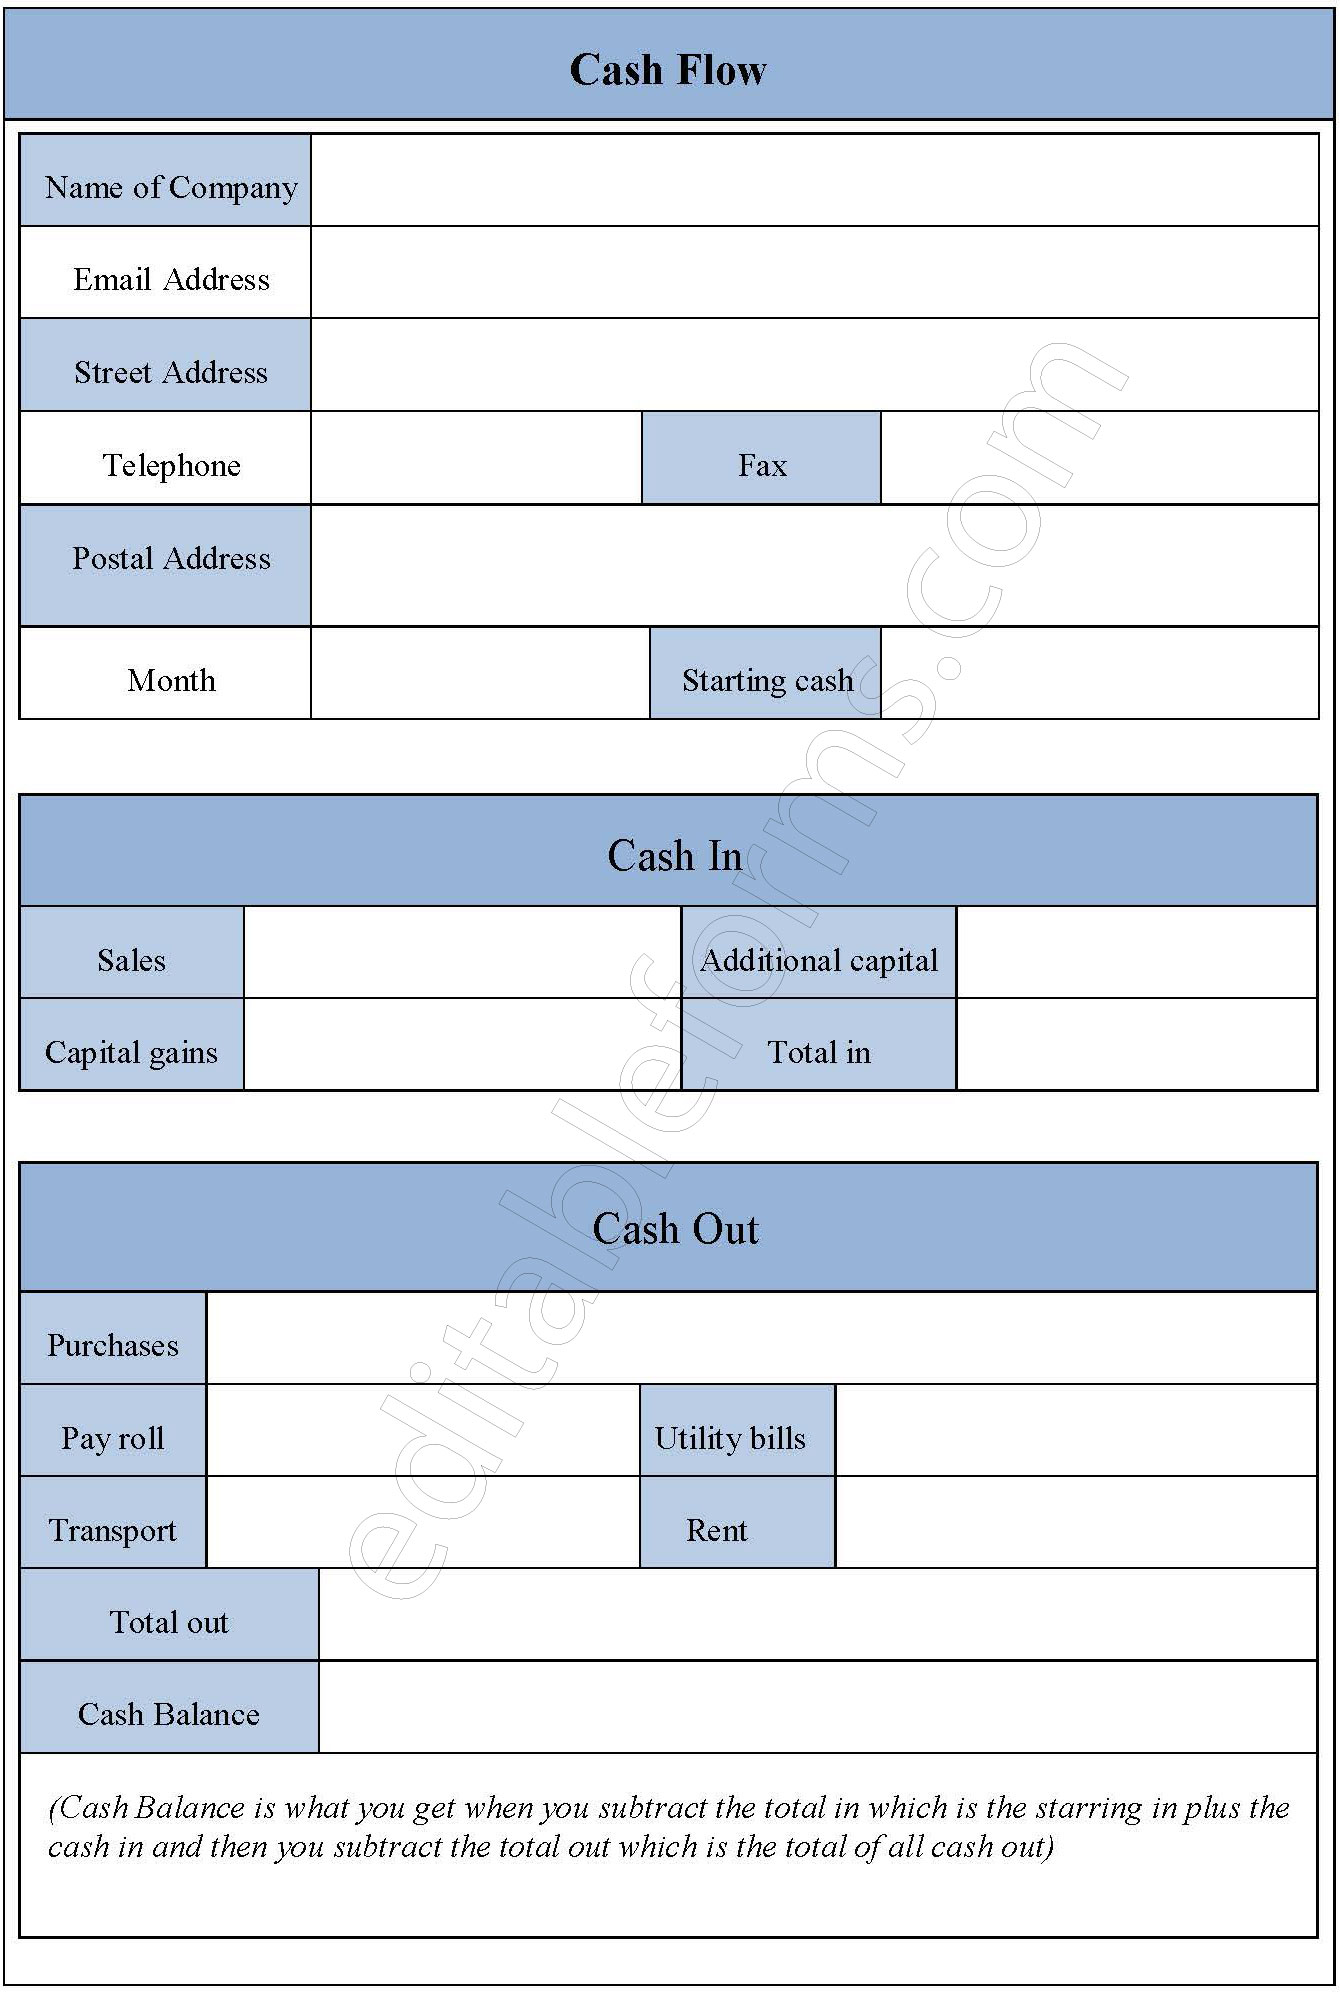 Cash Flow Fillable PDF Template